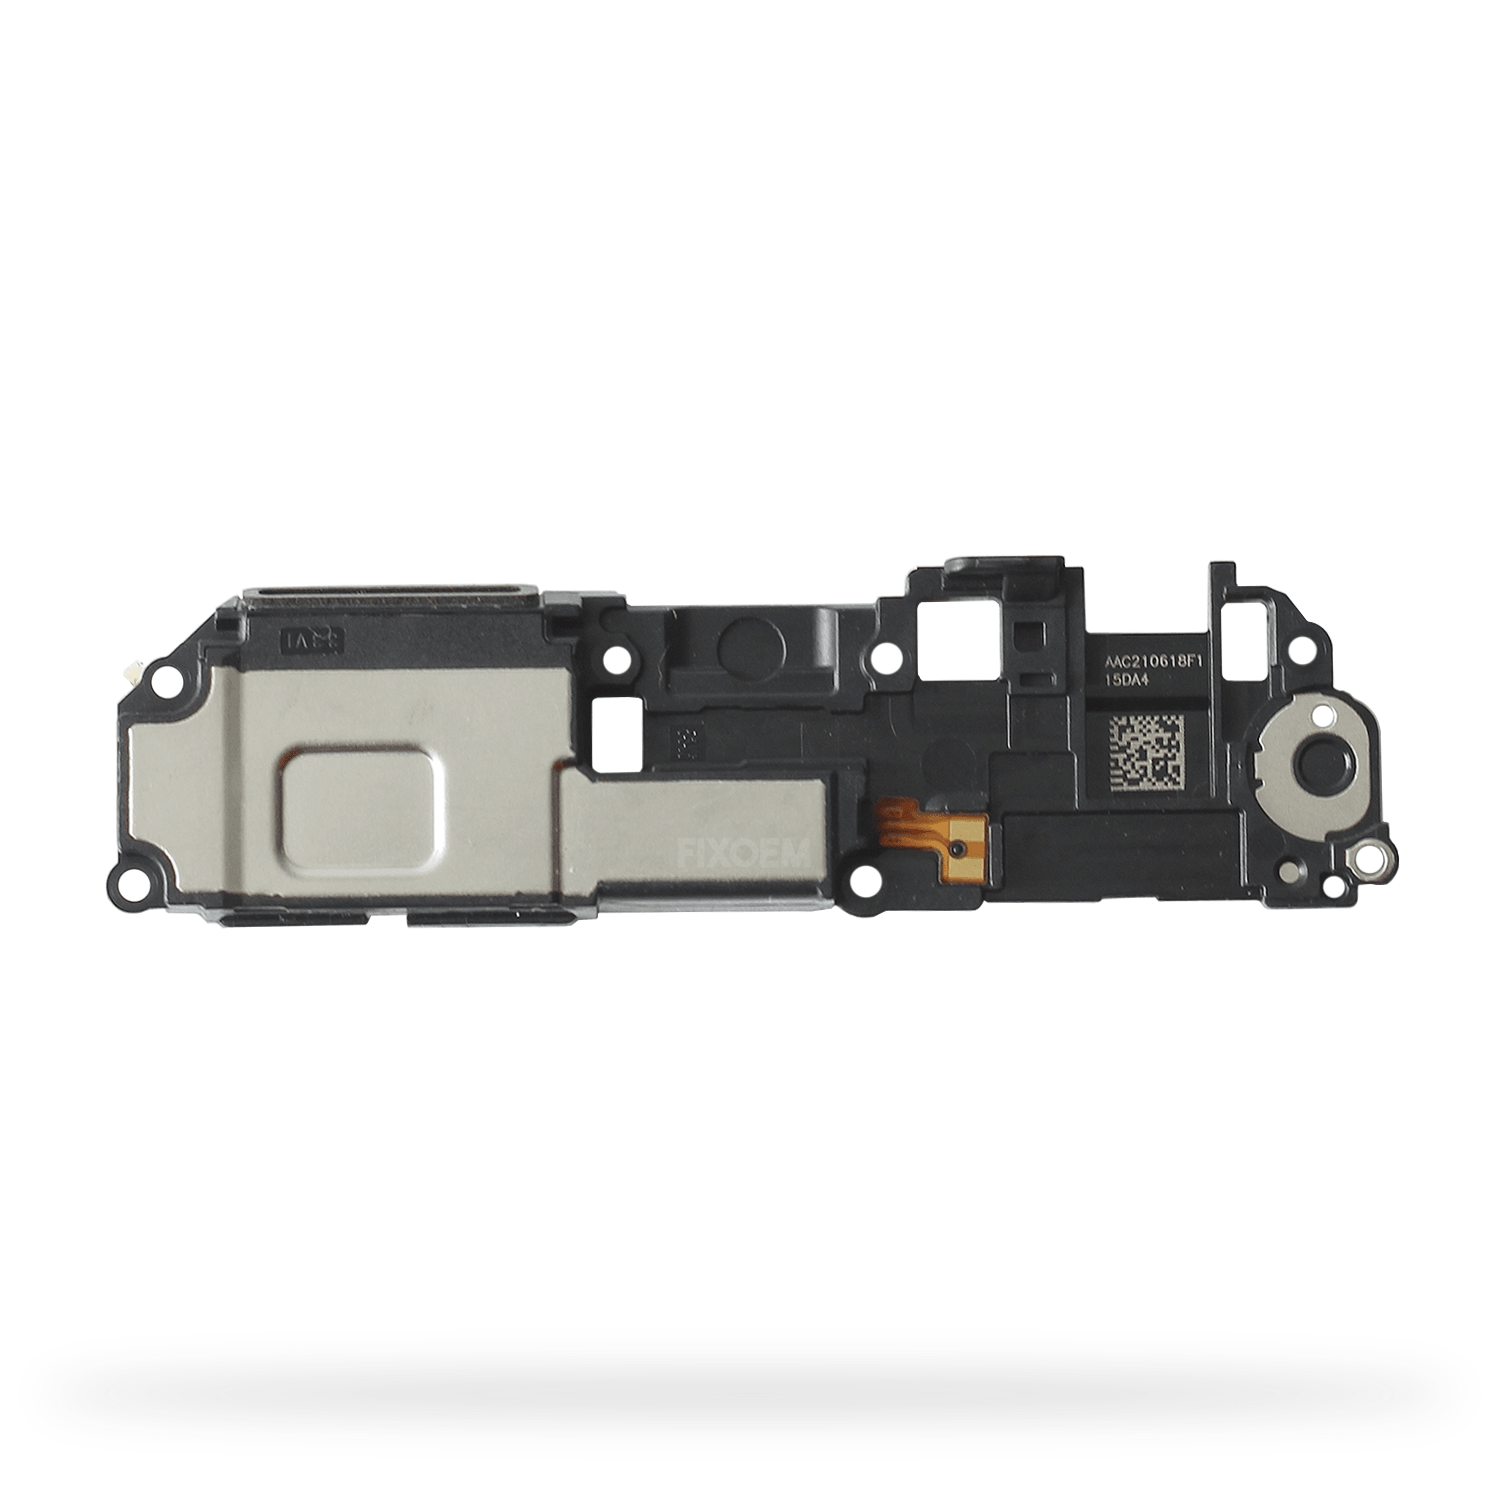 Altavoz Xiaomi Redmi 9 M2004j19g M2004j19c a solo $ 80.00 Refaccion y puestos celulares, refurbish y microelectronica.- FixOEM